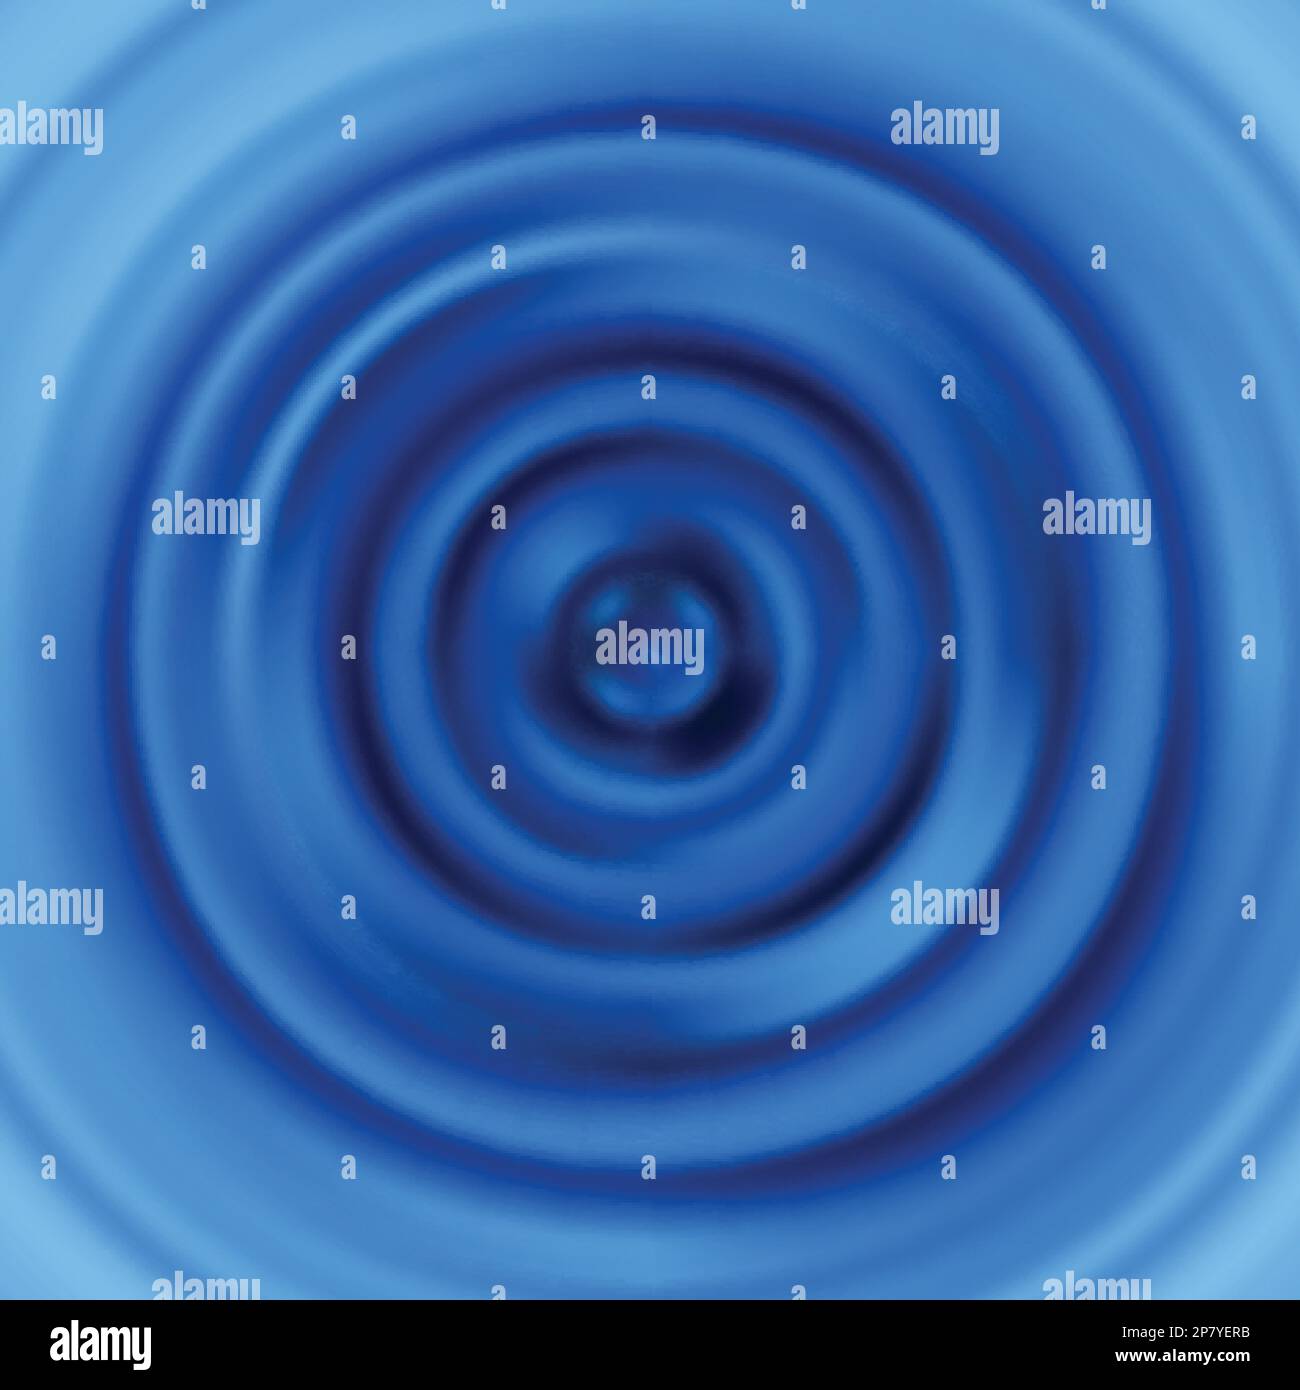 Increspature. Vibrazioni circolari. Onde d'acqua ondulate blu. Pattern vettoriale con cerchi concentrici a impulsi Illustrazione Vettoriale